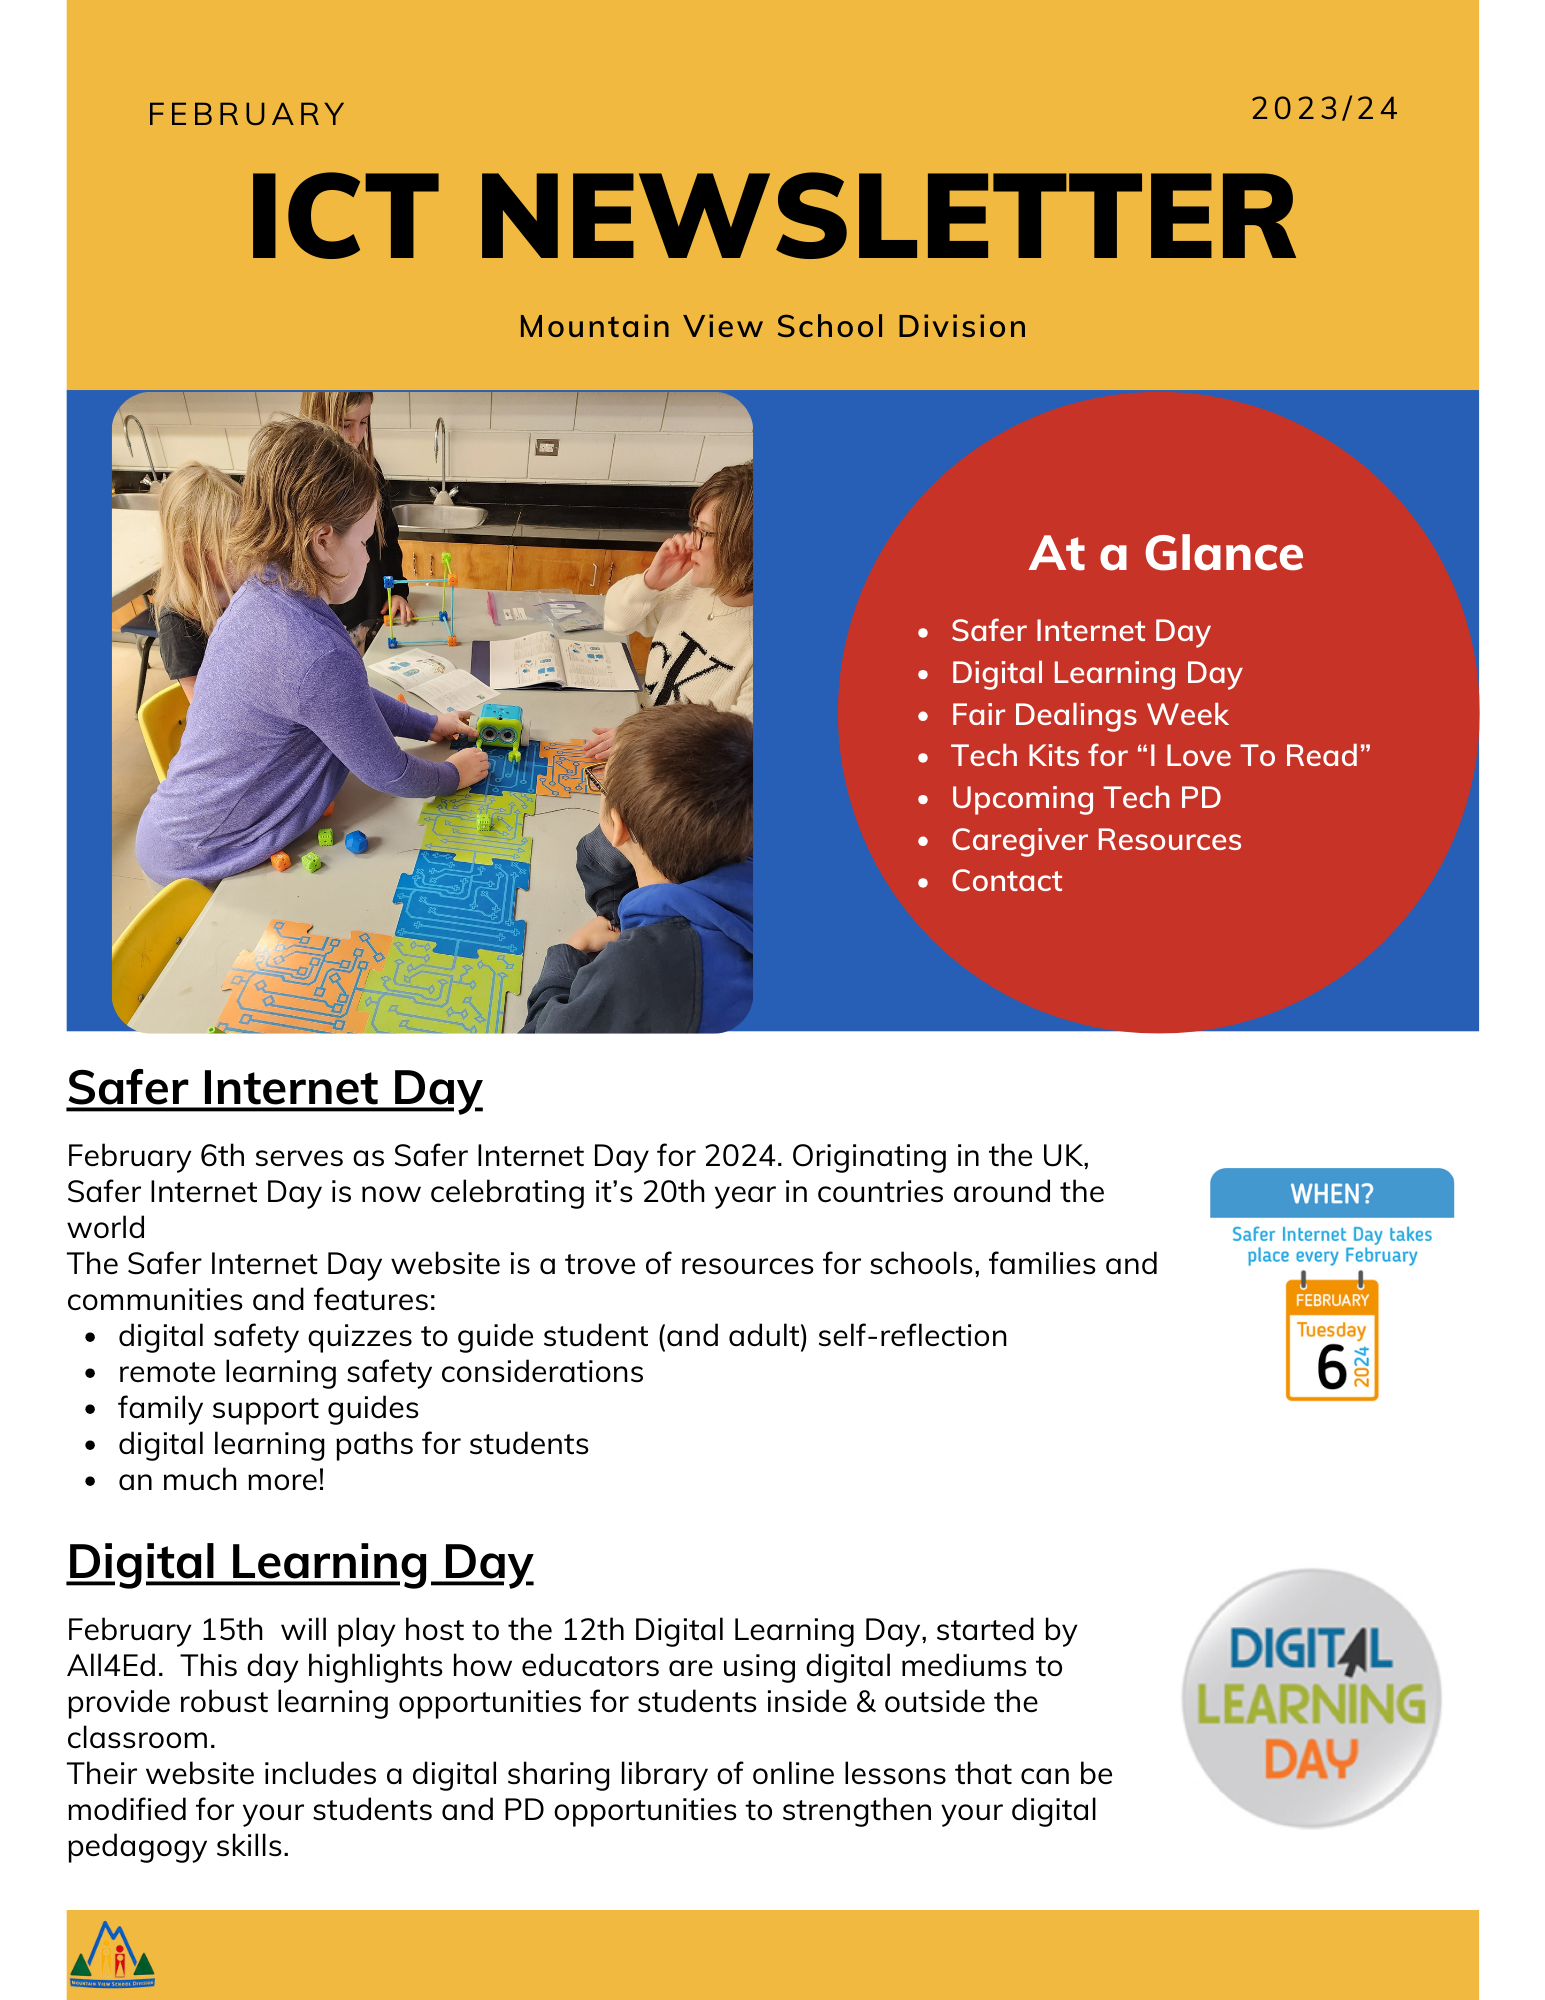 February ICT Newsletter